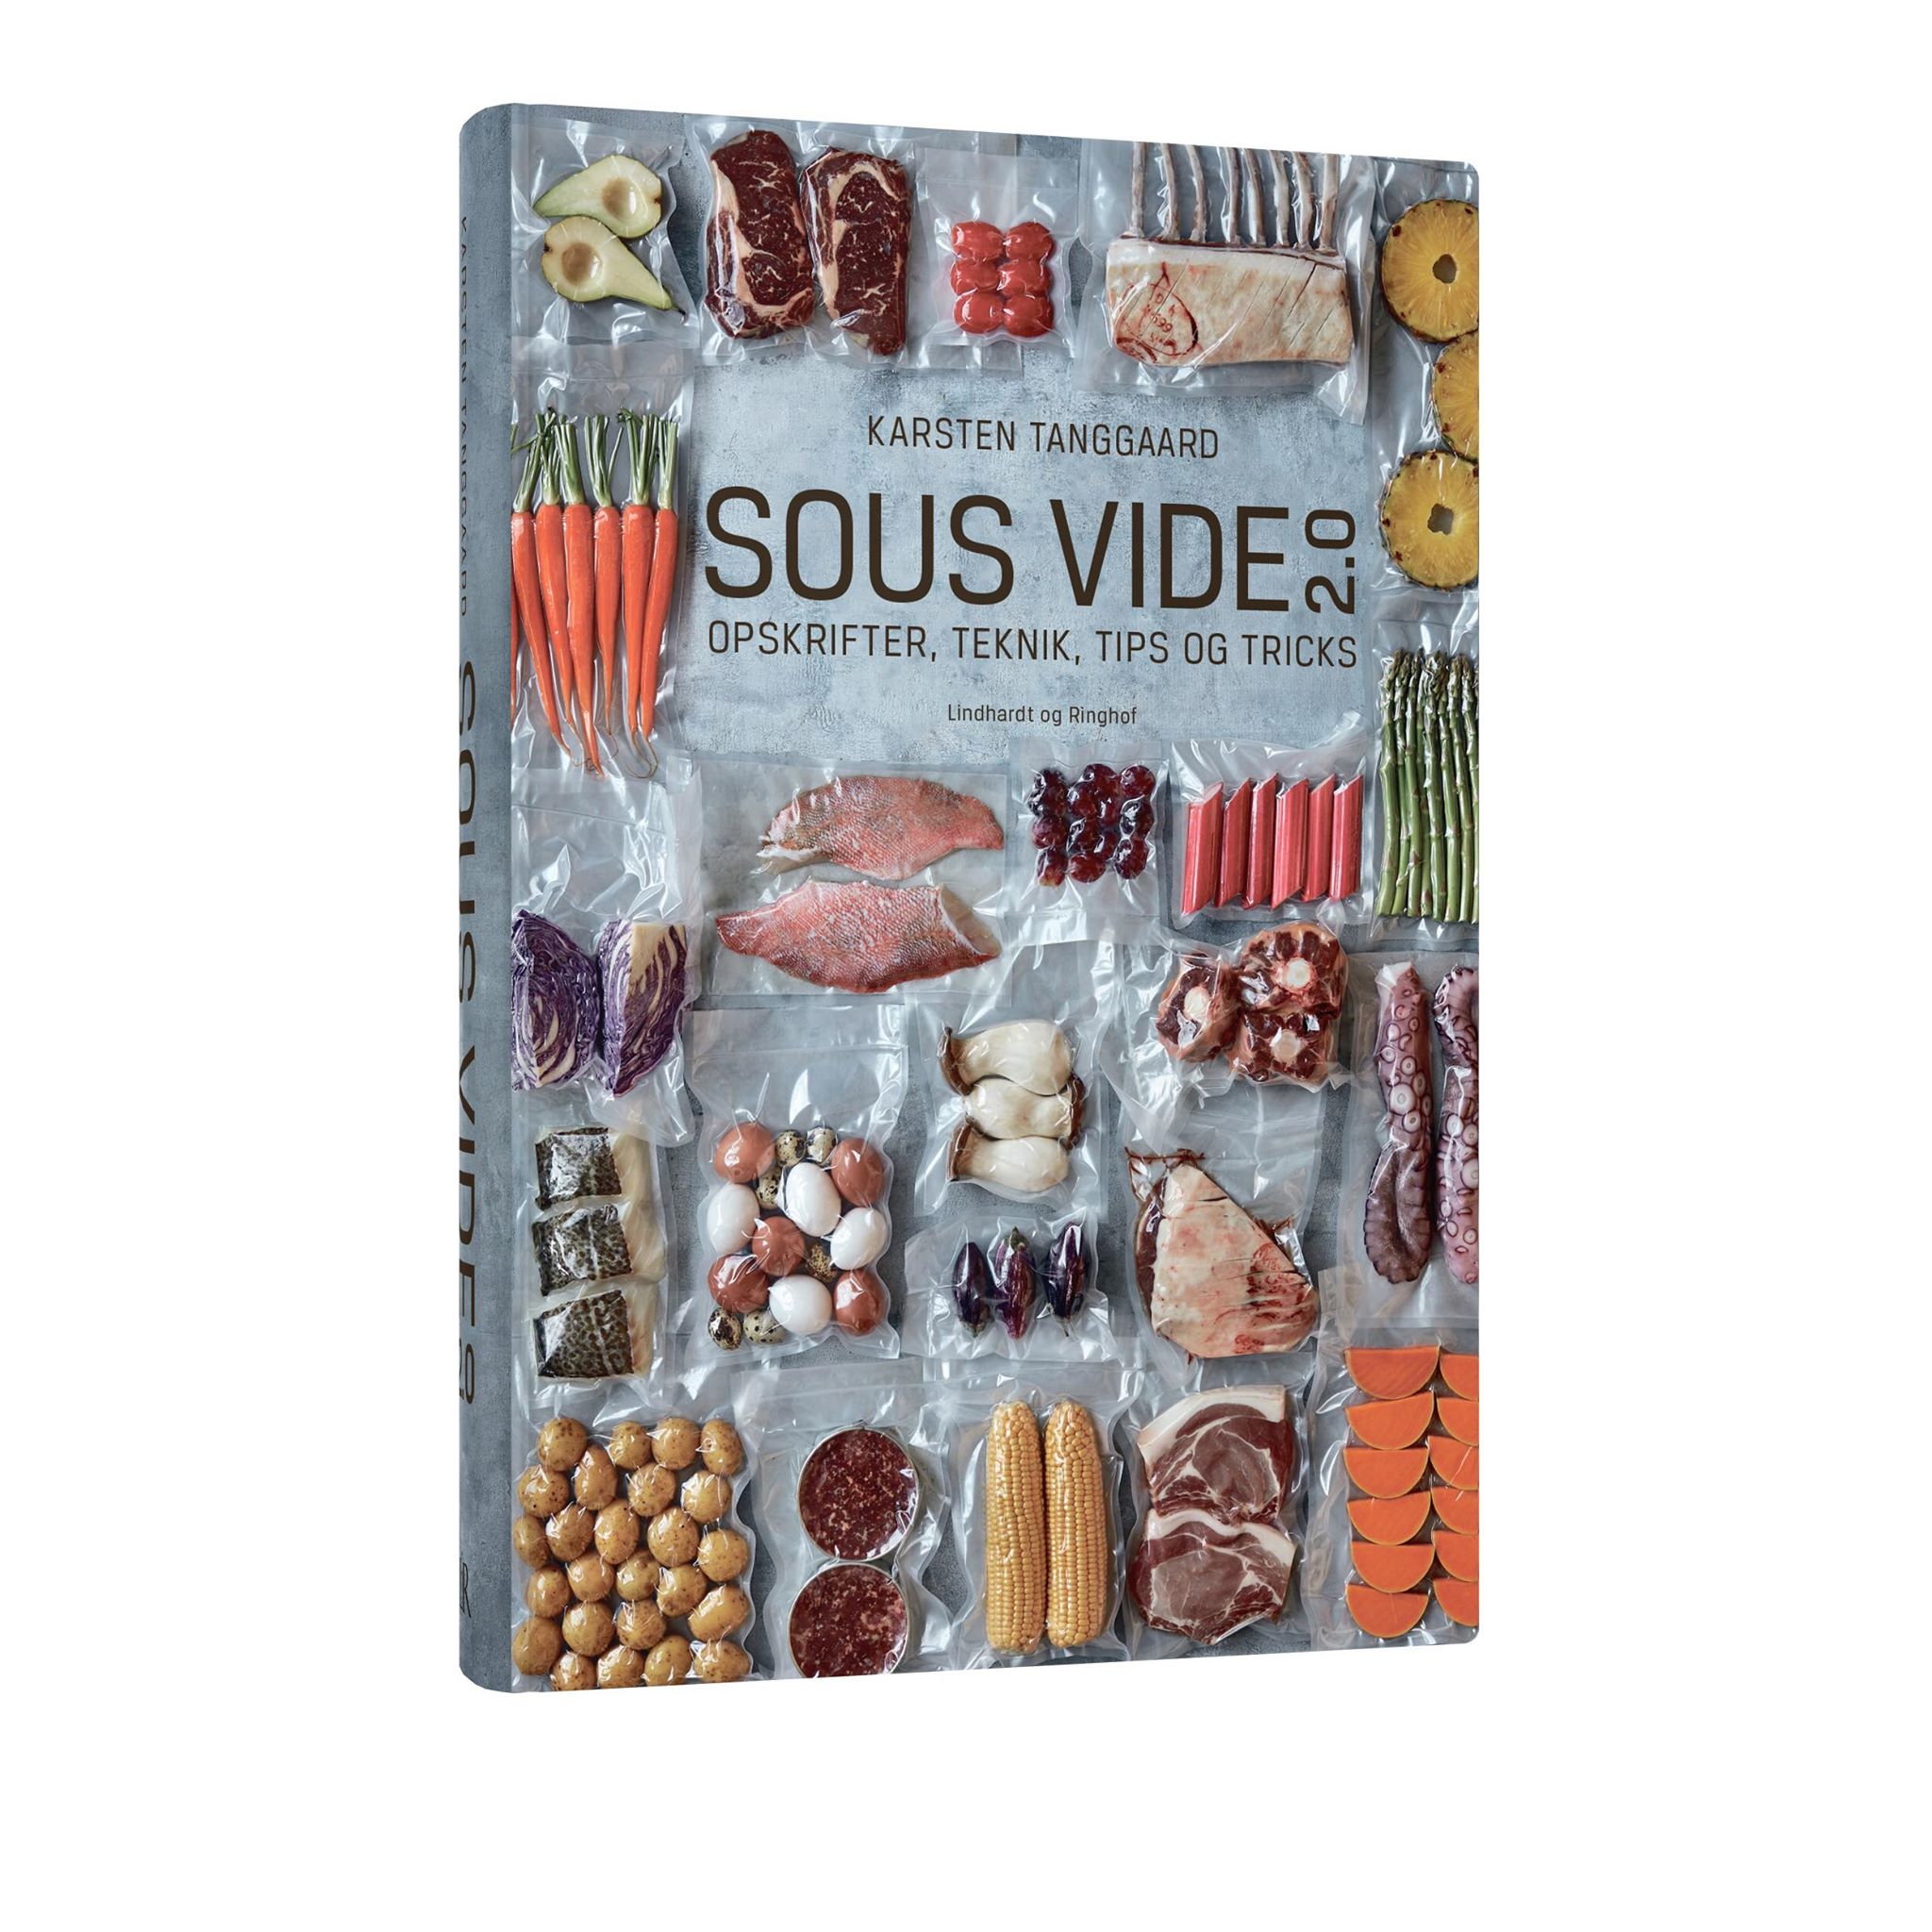 Le Guide De La Cuisine Sous Vide 2 0 SOUS VIDE 2.0 - Opskrifter, teknik, tips og tricks - KOGEBØGER